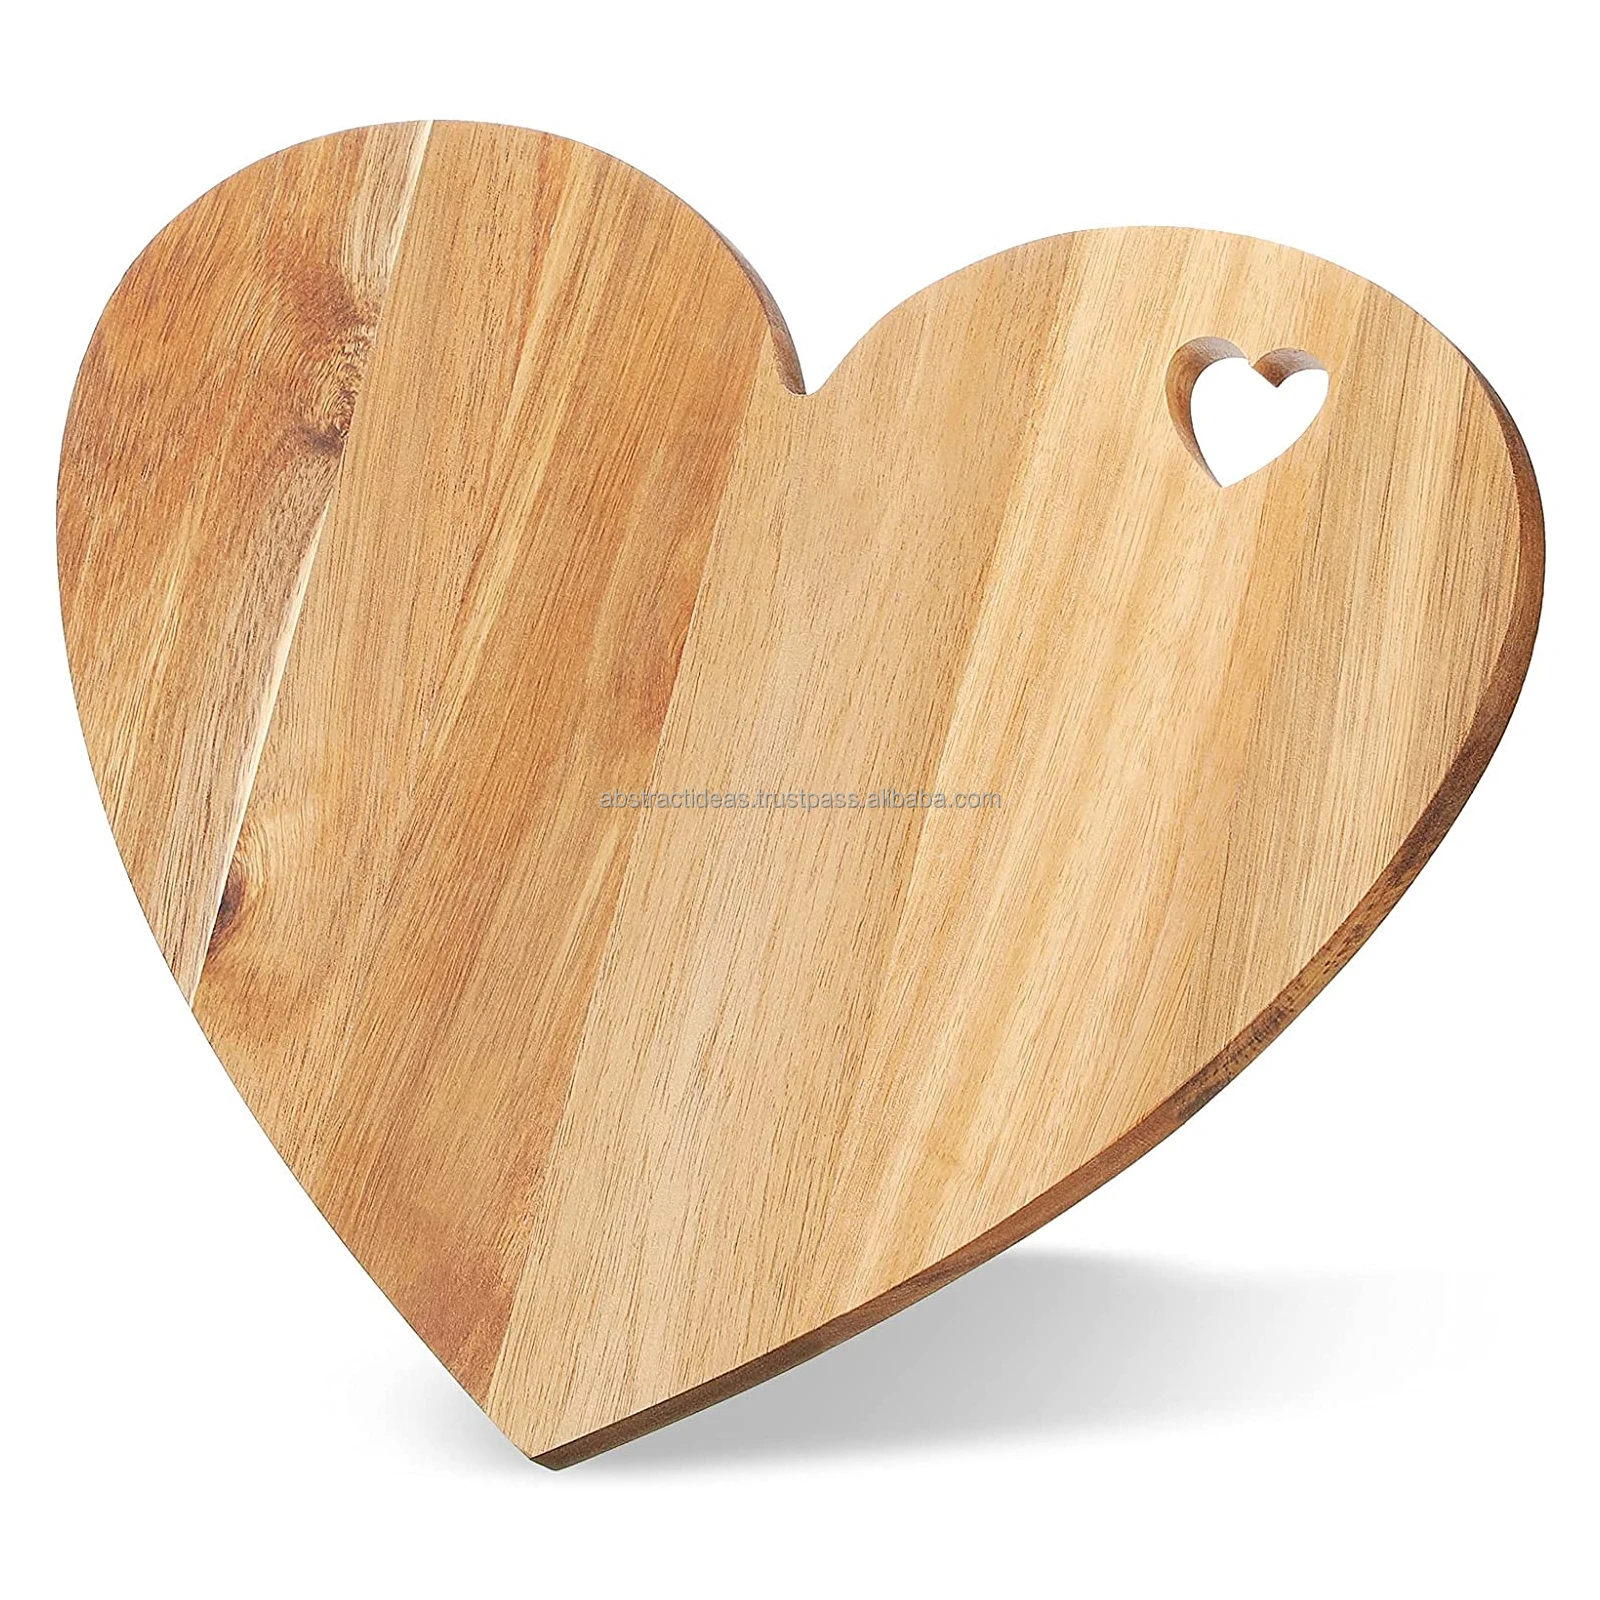 Hình trái tim bằng gỗ: Nếu bạn đang tìm kiếm một thiết kế trang trí đơn giản mà có ý nghĩa sâu sắc, hình trái tim bằng gỗ là lựa chọn tuyệt vời. Hình ảnh này sẽ khiến bạn nghĩ đến tình yêu, sự tử tế và sự cứng cỏi của cuộc sống.